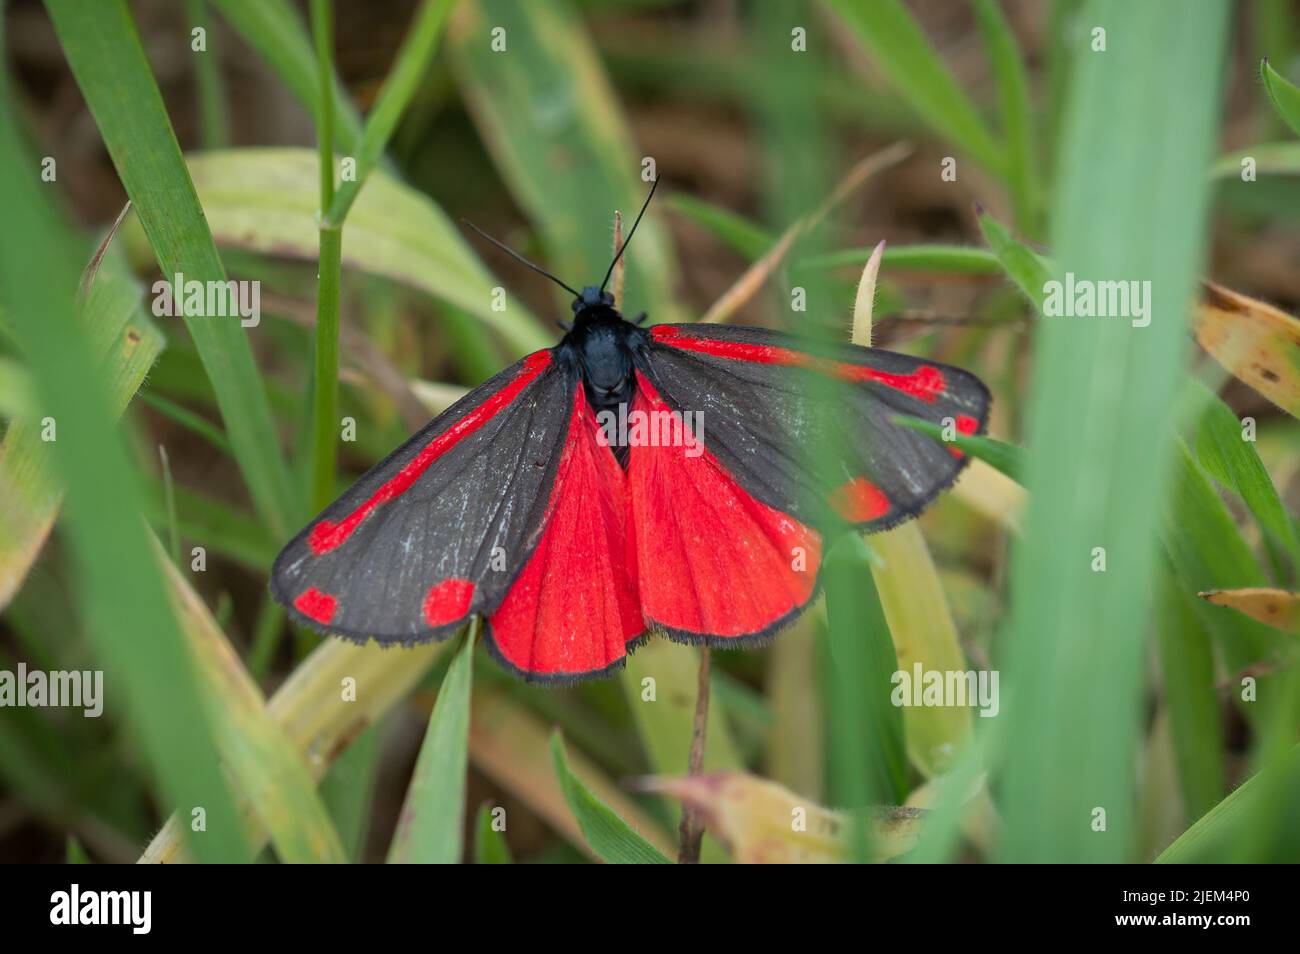 Cinnabar moth among green grass Stock Photo